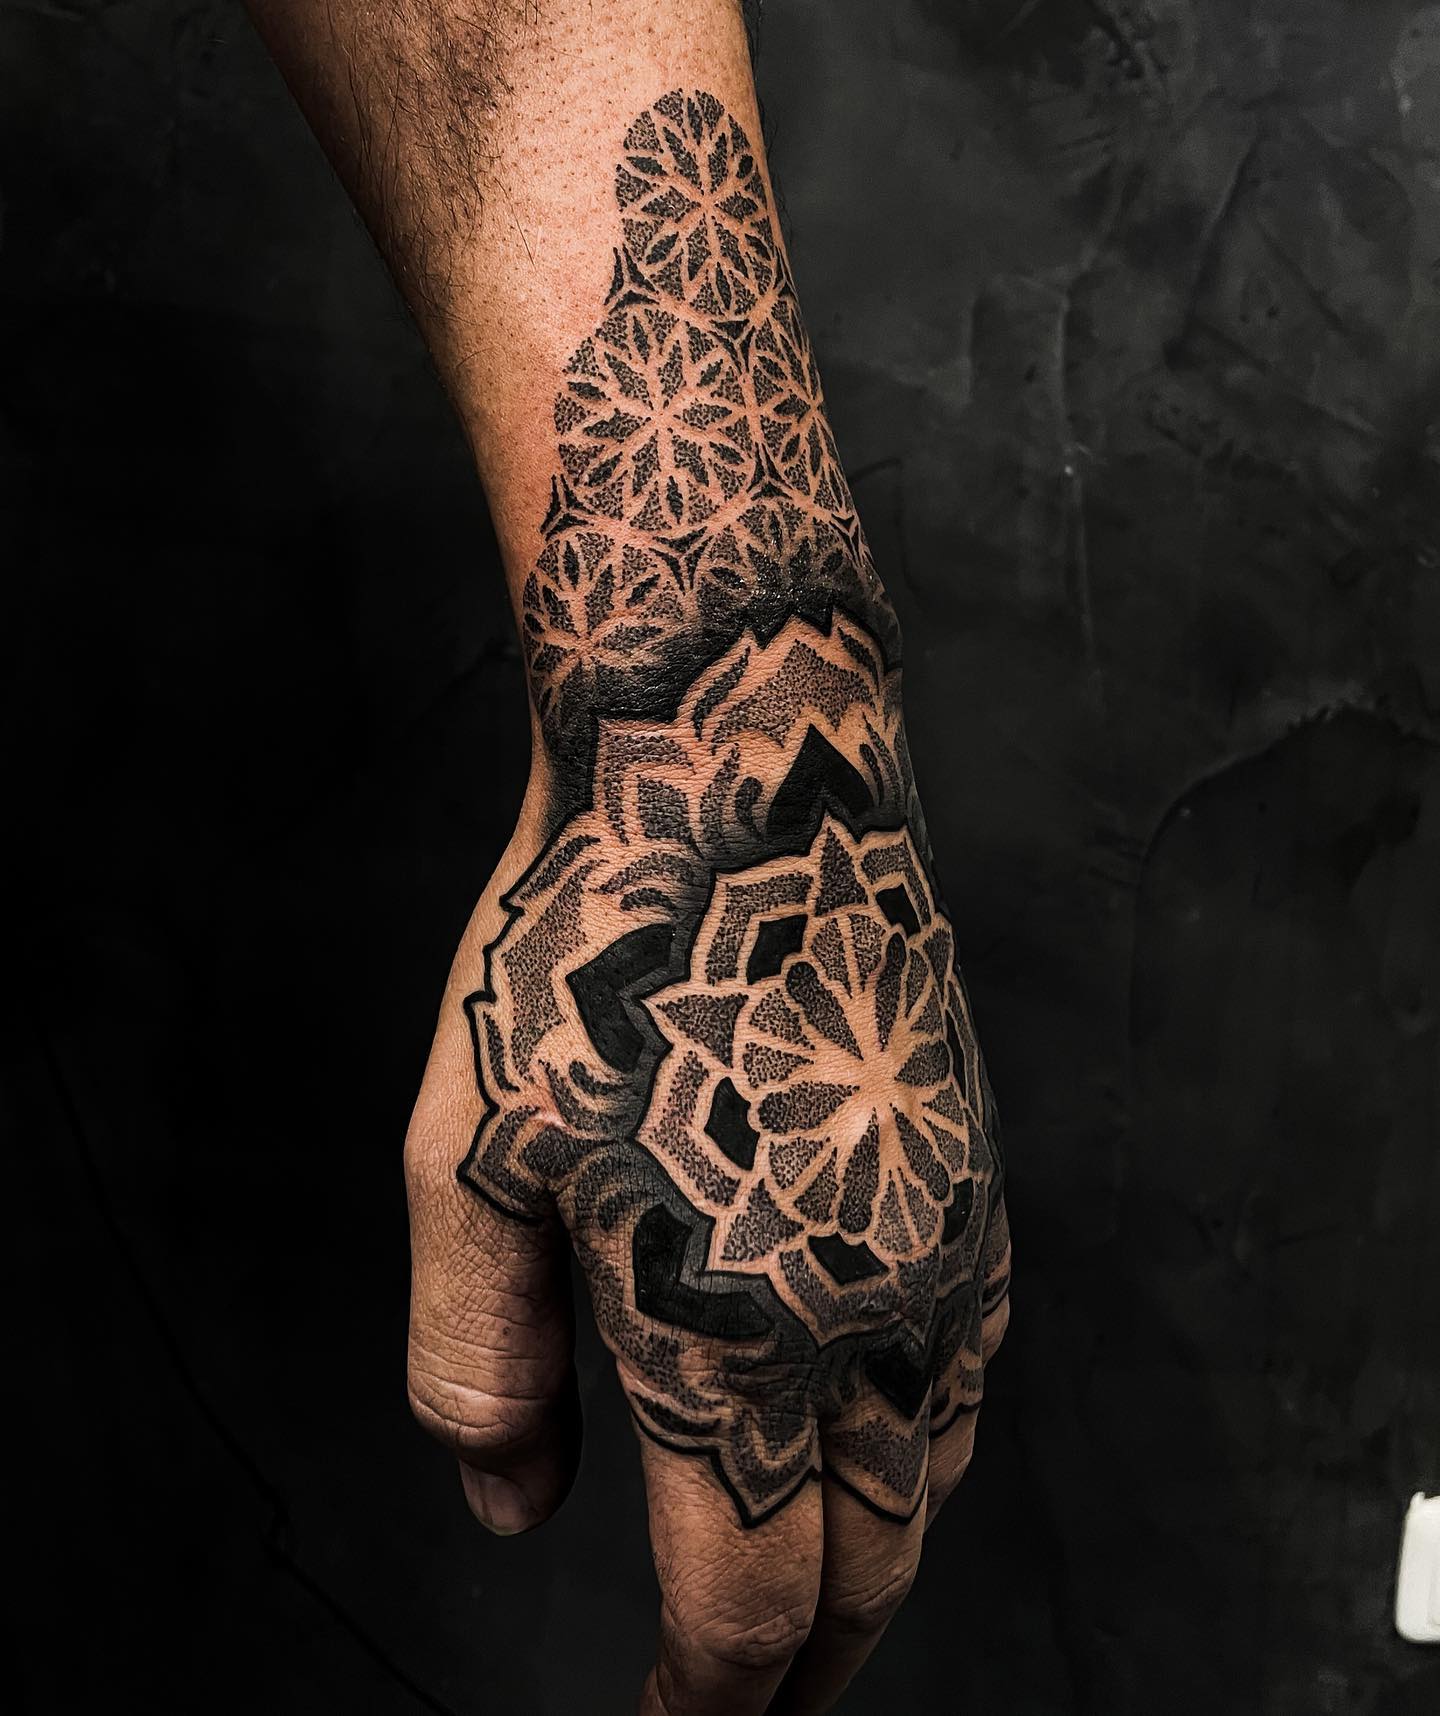 Tatuaje de Mandala Dotwork en la Mano.